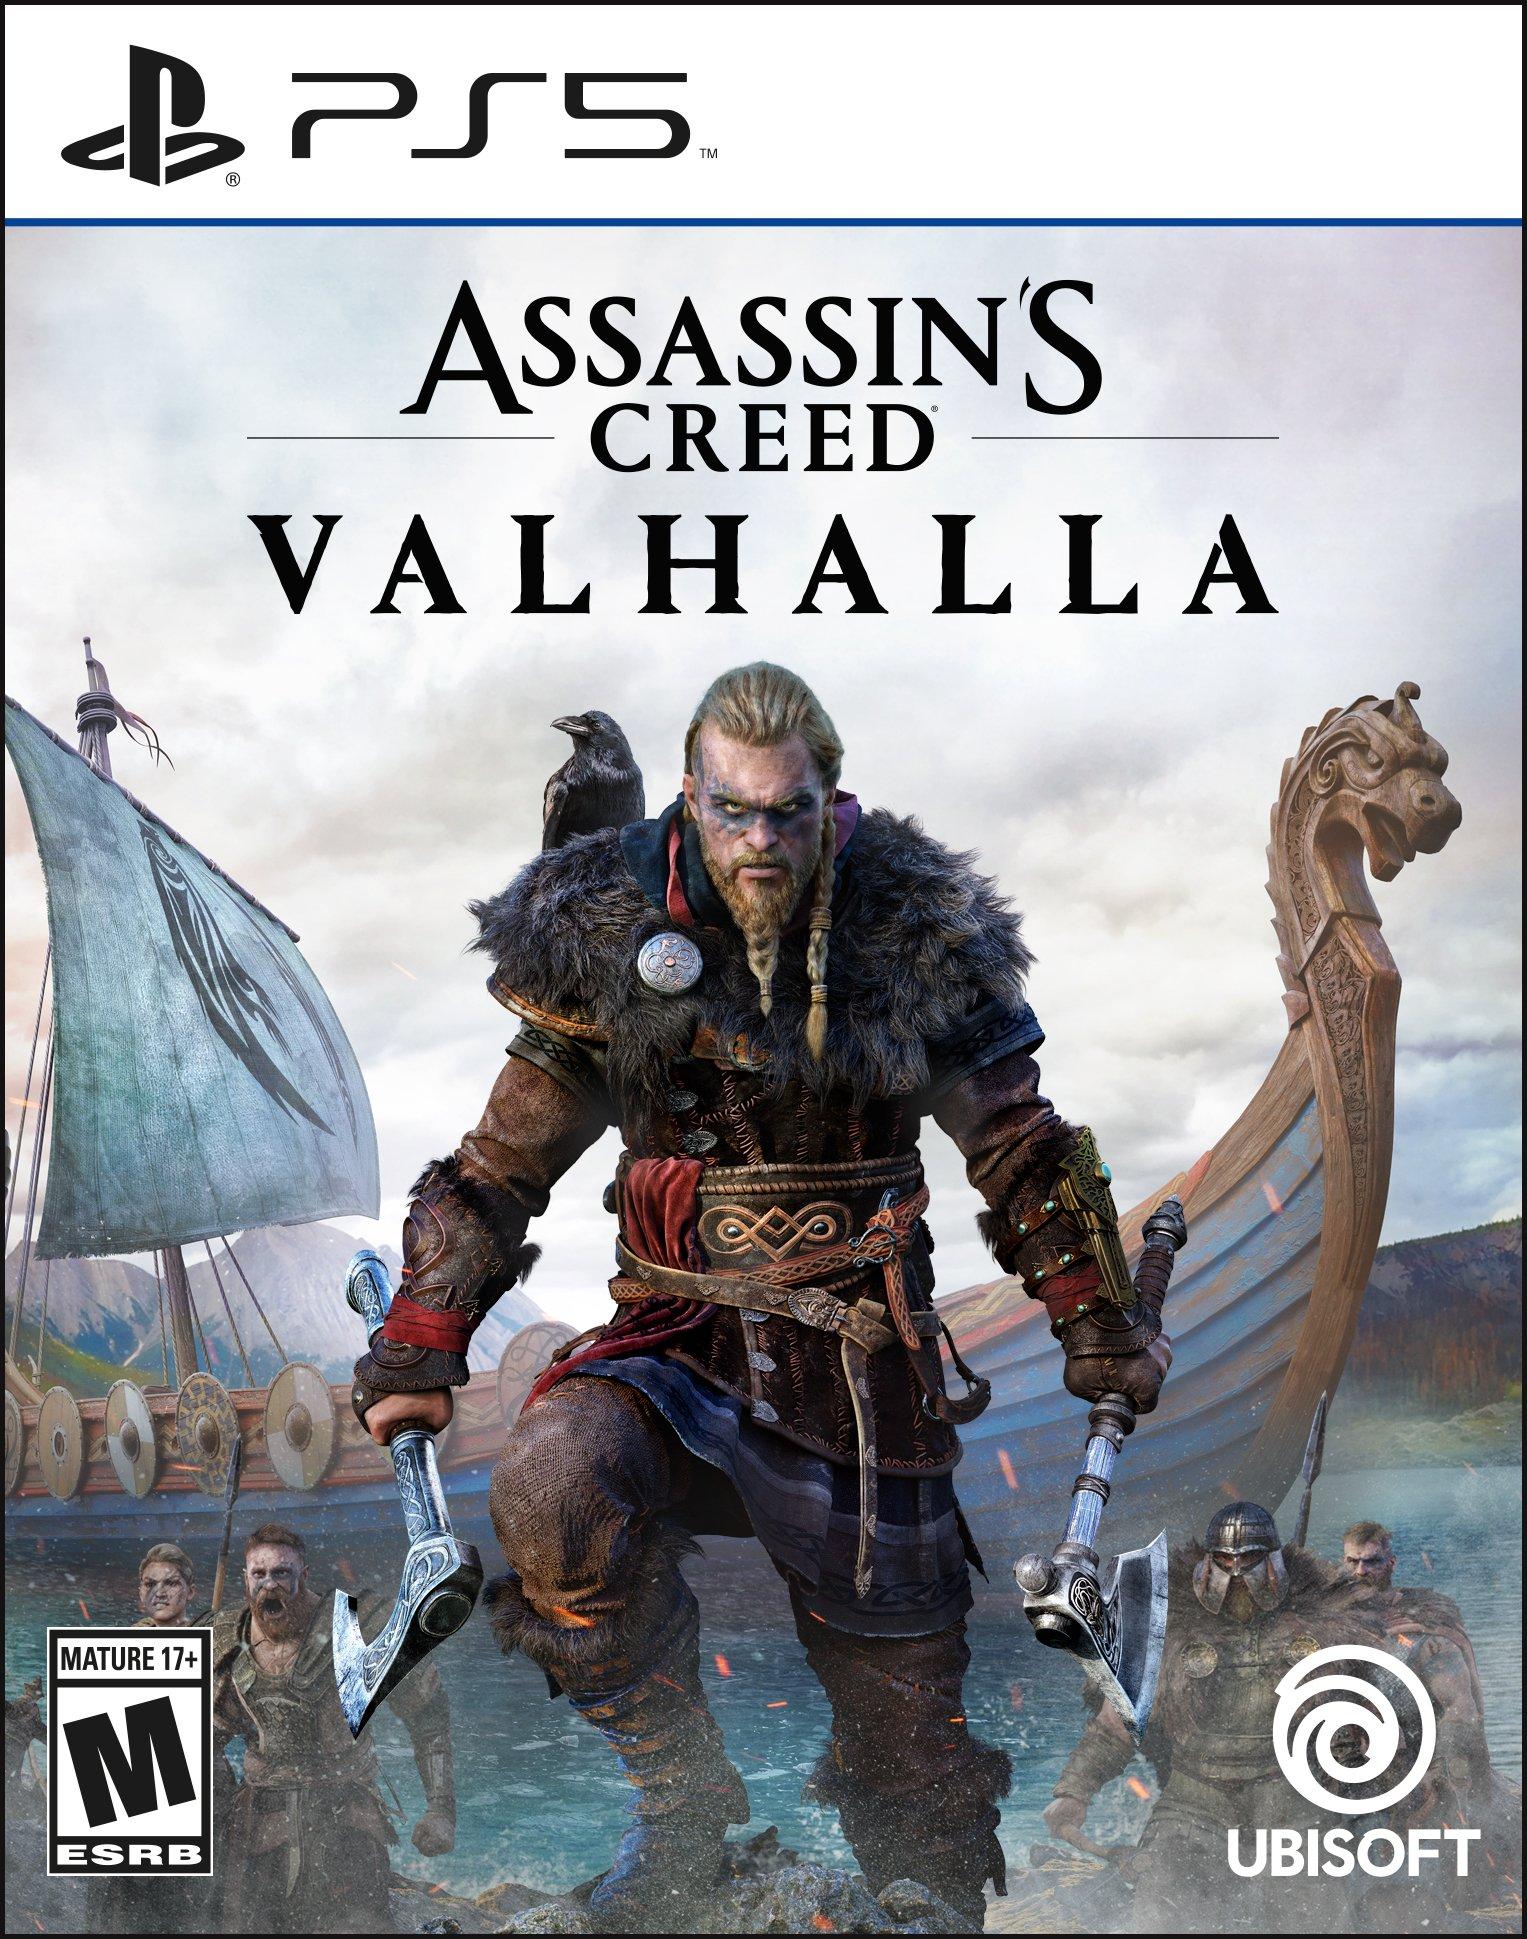 Xbox Free Play Days gain AC Black Flag, Valhalla, Elder Scrolls